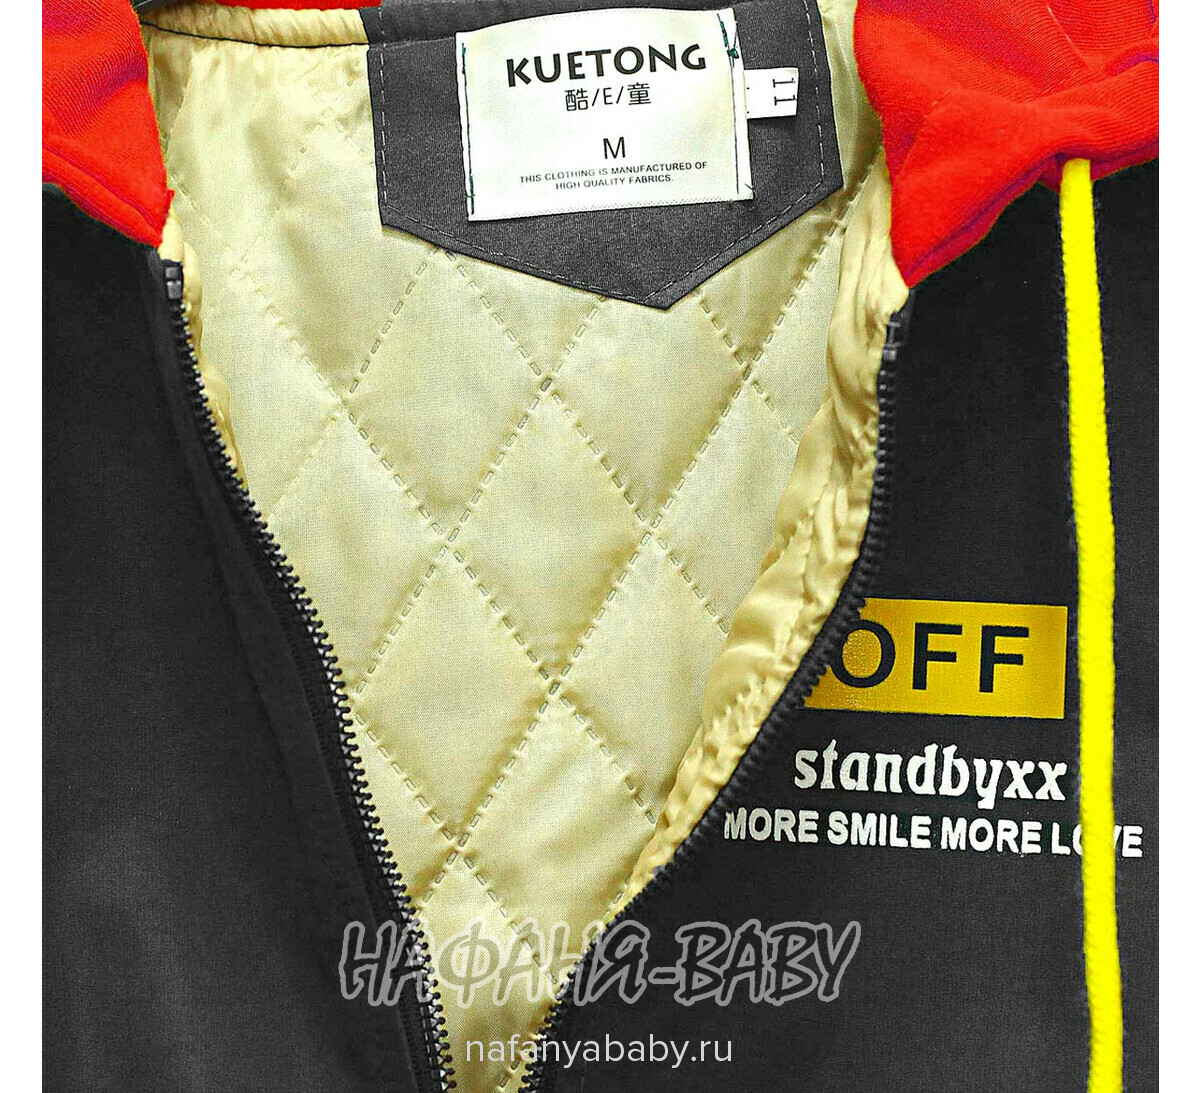 Детская демисезонная куртка KUETONG, купить в интернет магазине Нафаня. арт: 8803.